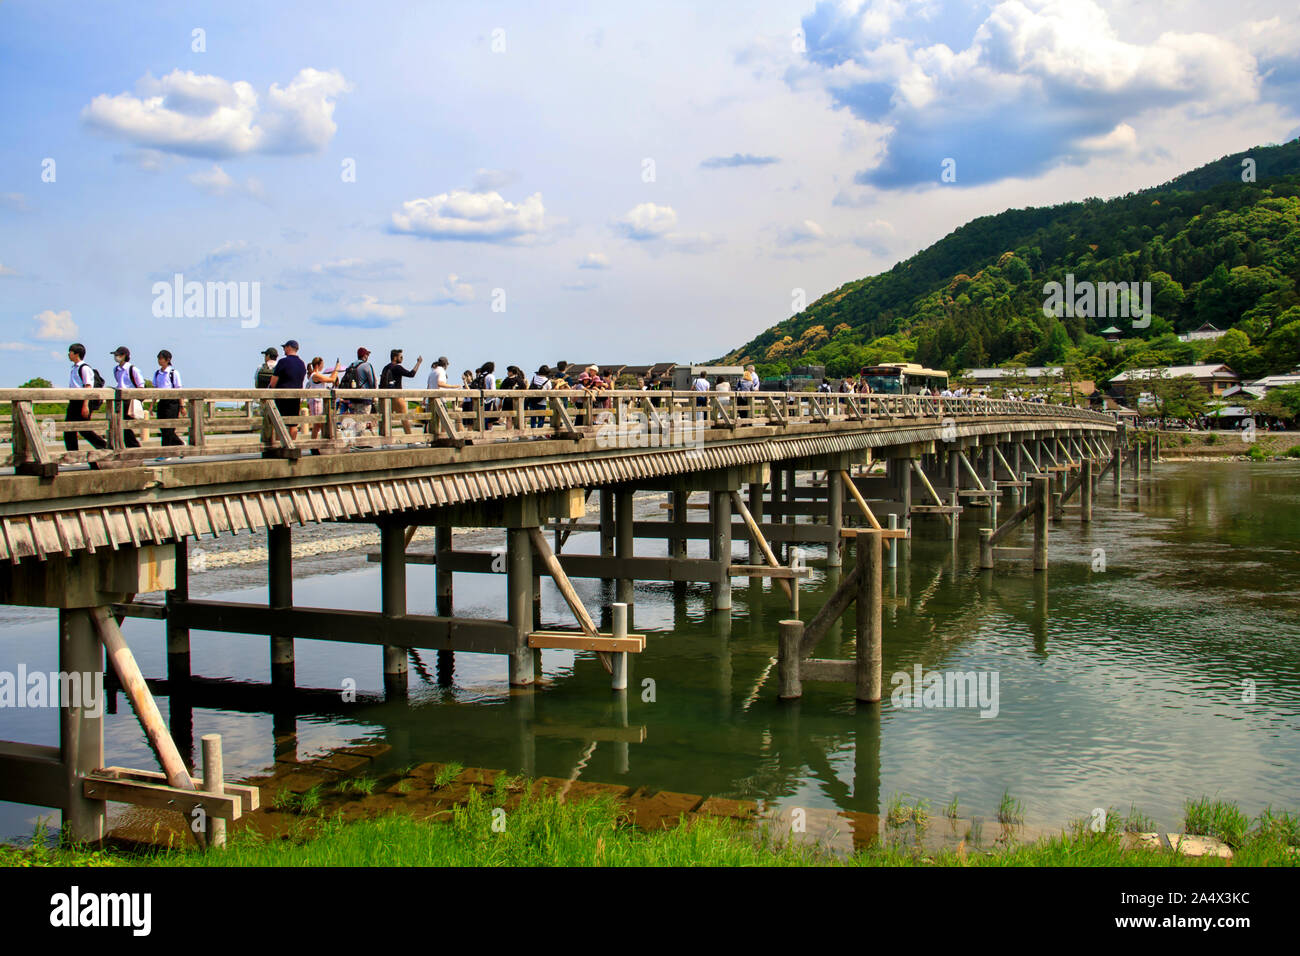 Les personnes qui traversent le pont Togetsu-kyo en bois sur la rivière oi-gawa, quartier Arashiyama, Kyoto, Japon Banque D'Images